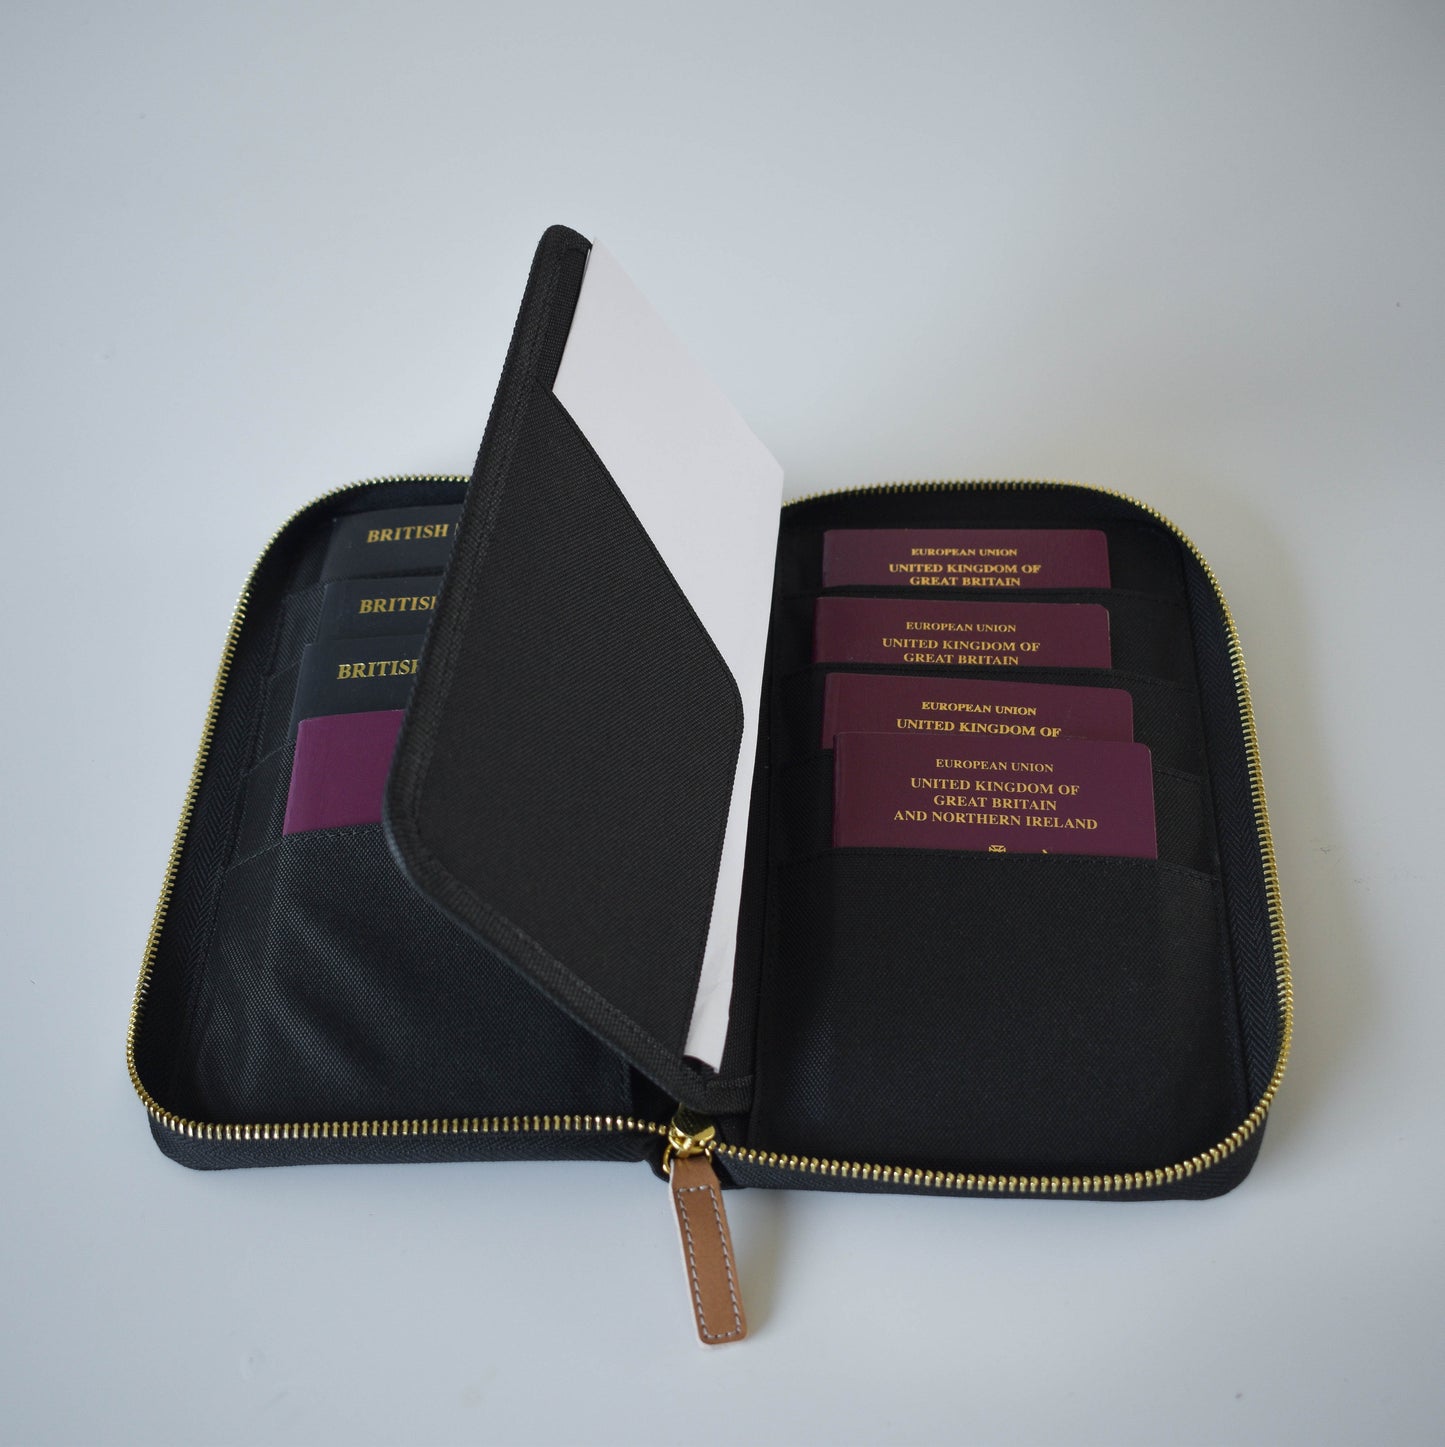 Premium Family Passport Holder and Document Organiser for 8